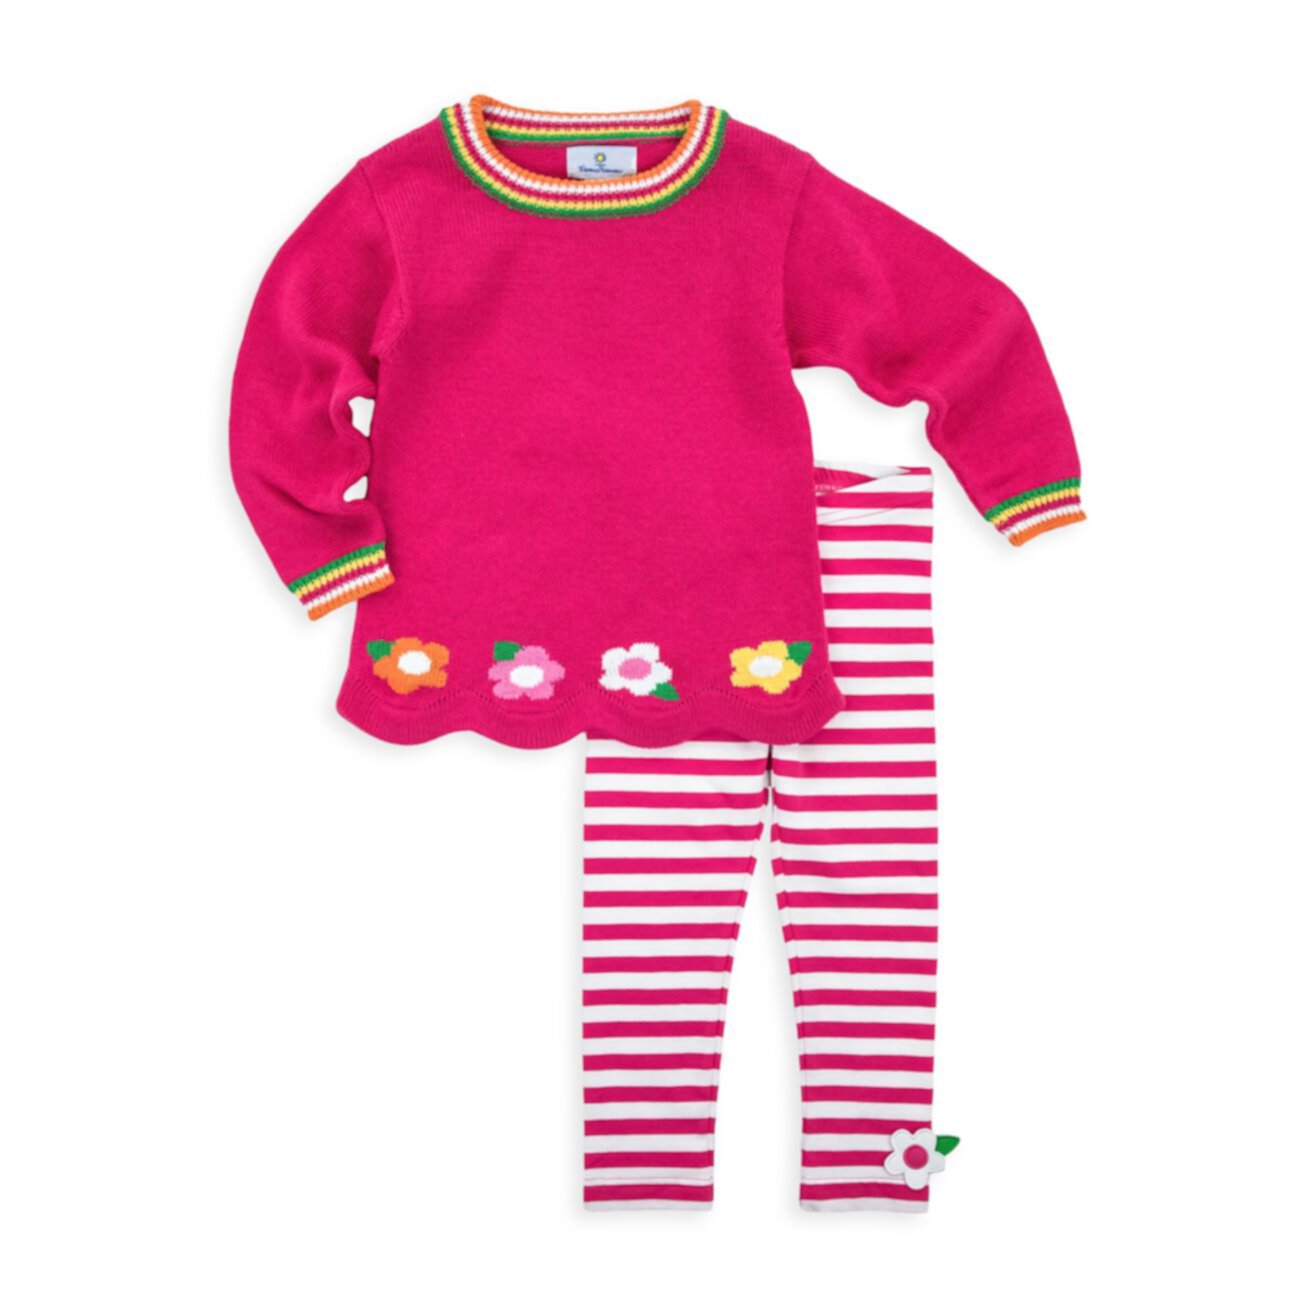 Двухсекционный свитер с цветочной отделкой и фестонами для маленькой девочки и amp; Комплект полосатых леггинсов Florence Eiseman